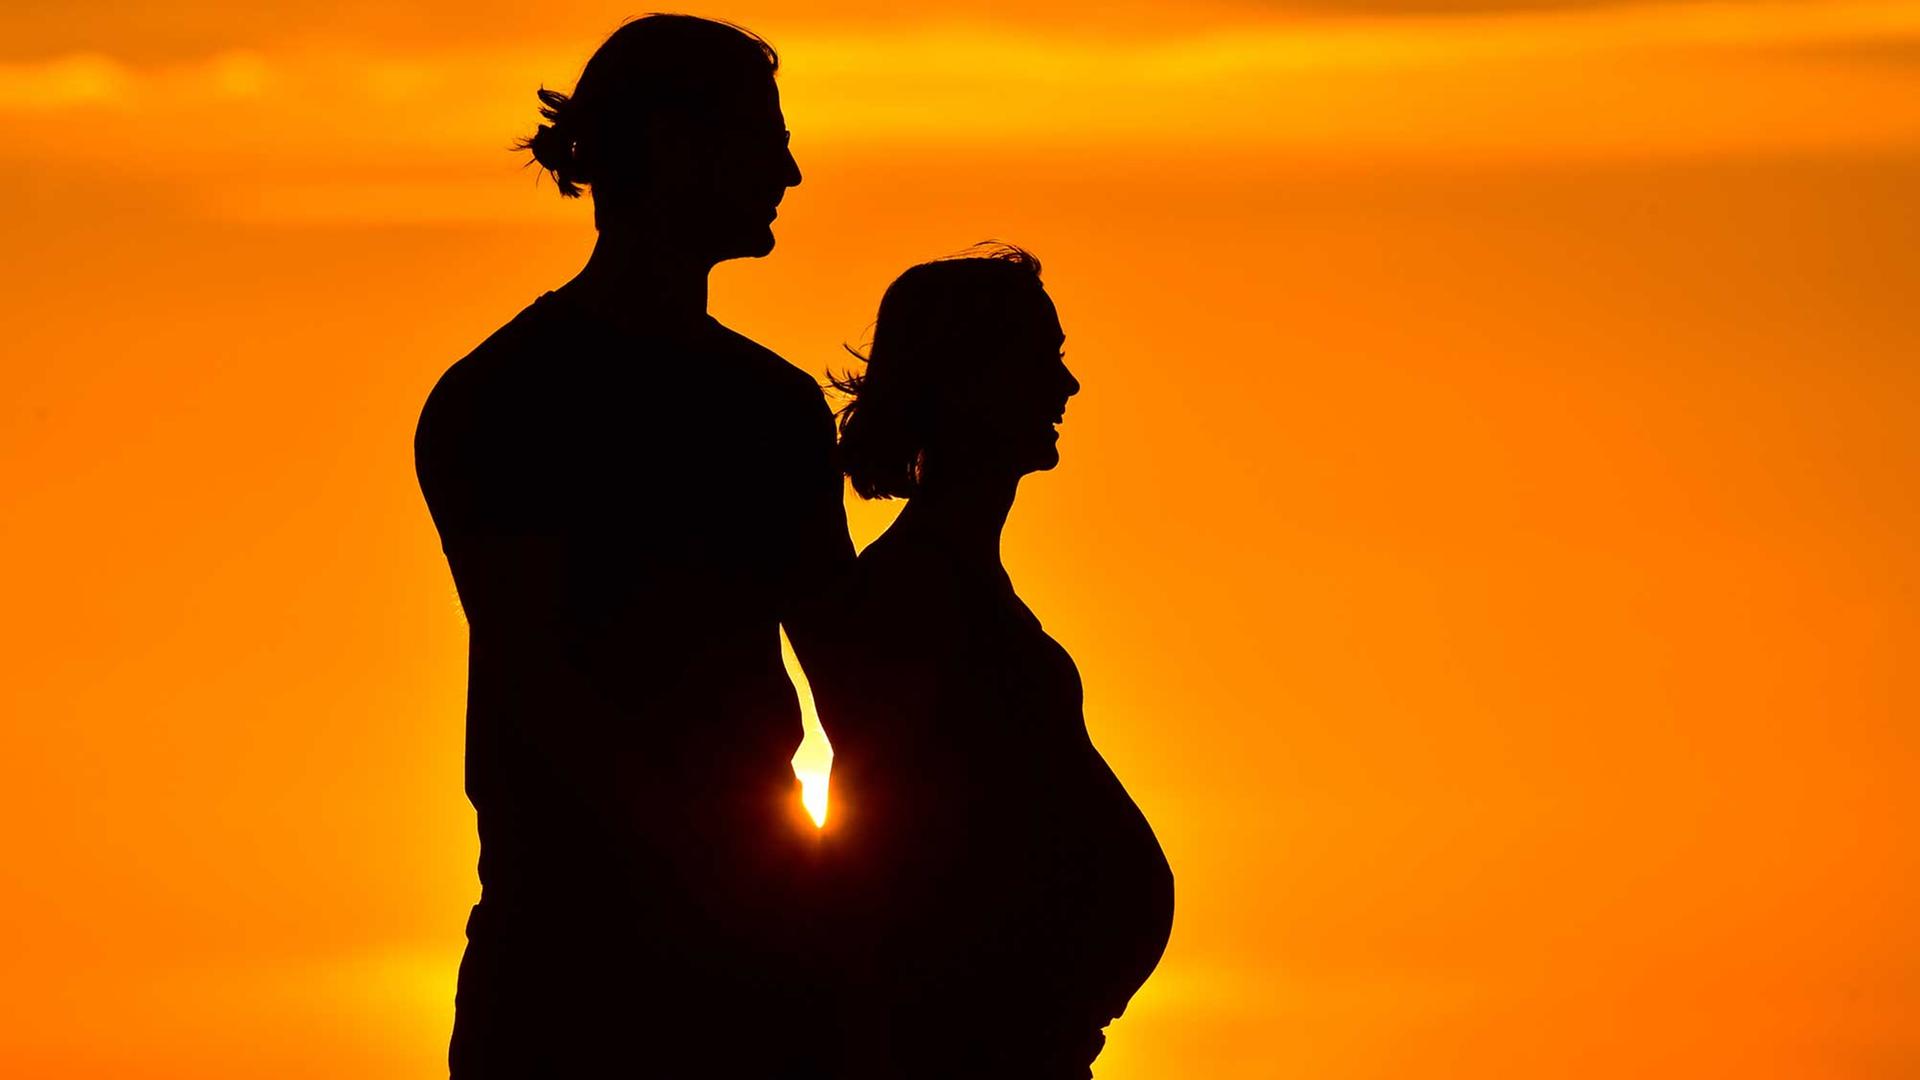 Zukünftige junge Eltern, eine im 8. Monat schwangere Frau und ihr Mann genießen zusammen den Sonnenuntergang, fotografiert am 09.08.2015 in Sieversdorf (Brandenburg).